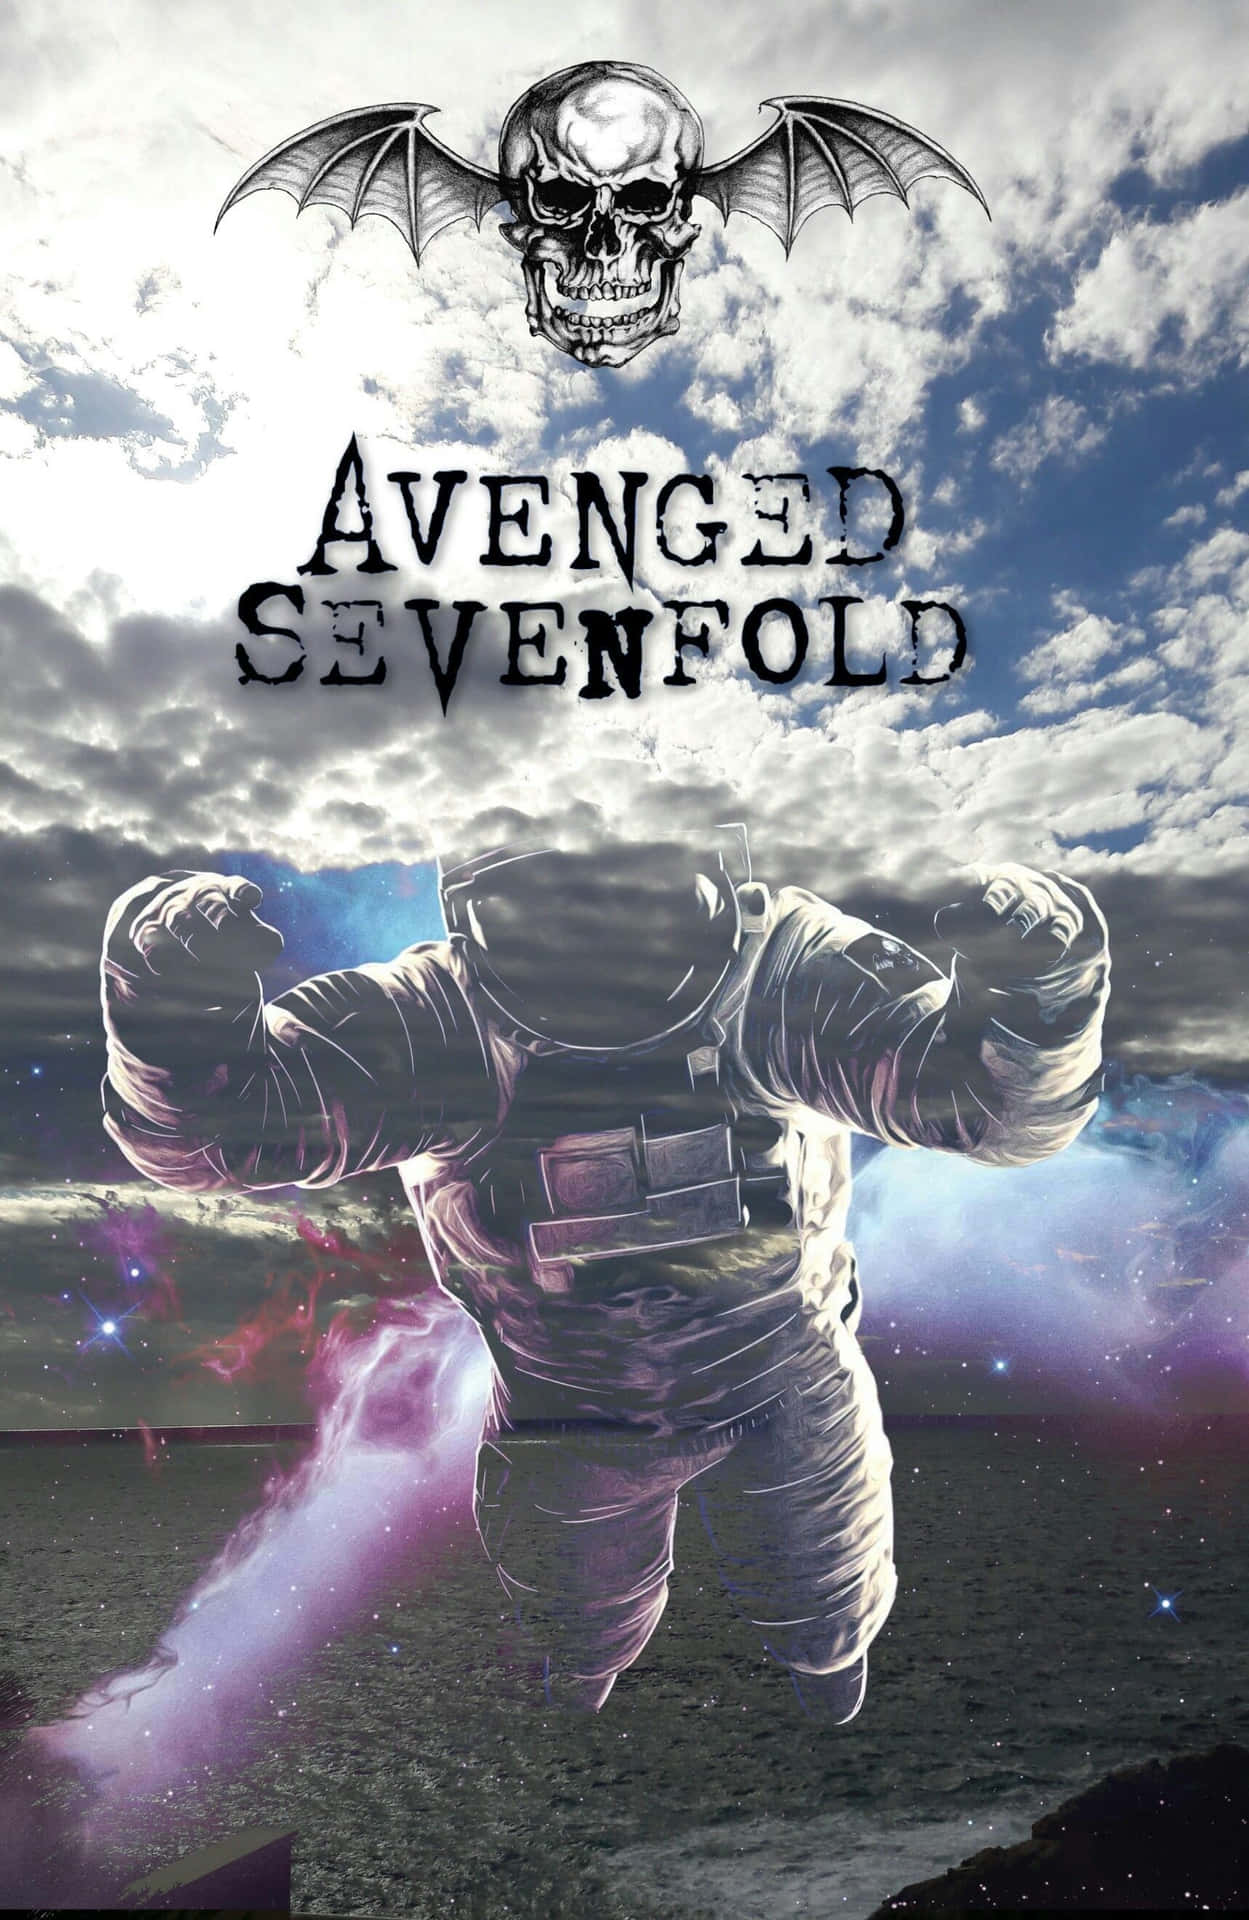 Et skud af Avenged Sevenfold, den populære heavy metal band. Wallpaper